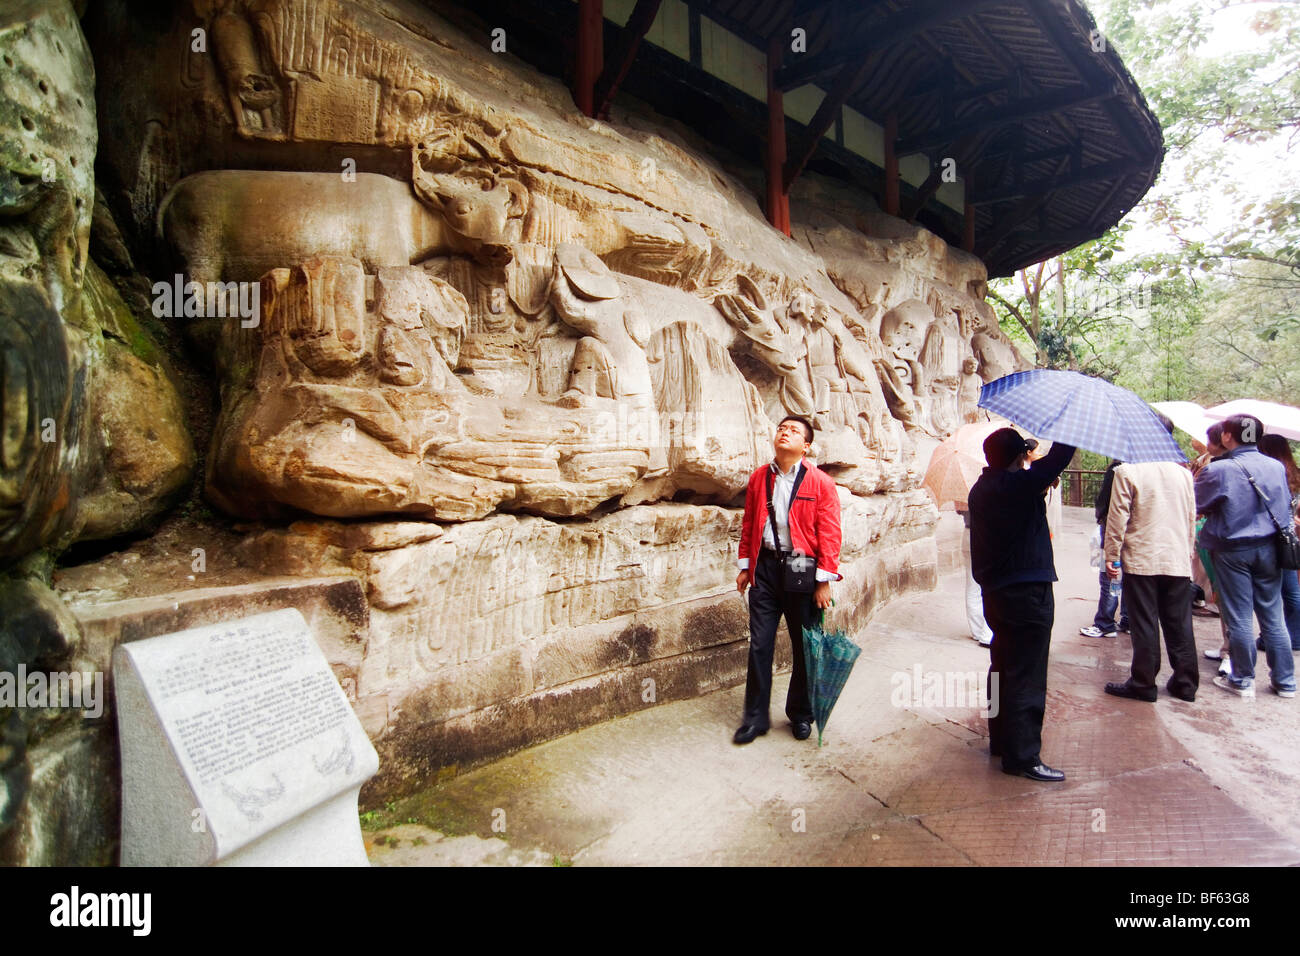 Ritual Site Of Buffaloes, Dazu Grotto, Baoding Hill, Chongqing, China Stock Photo